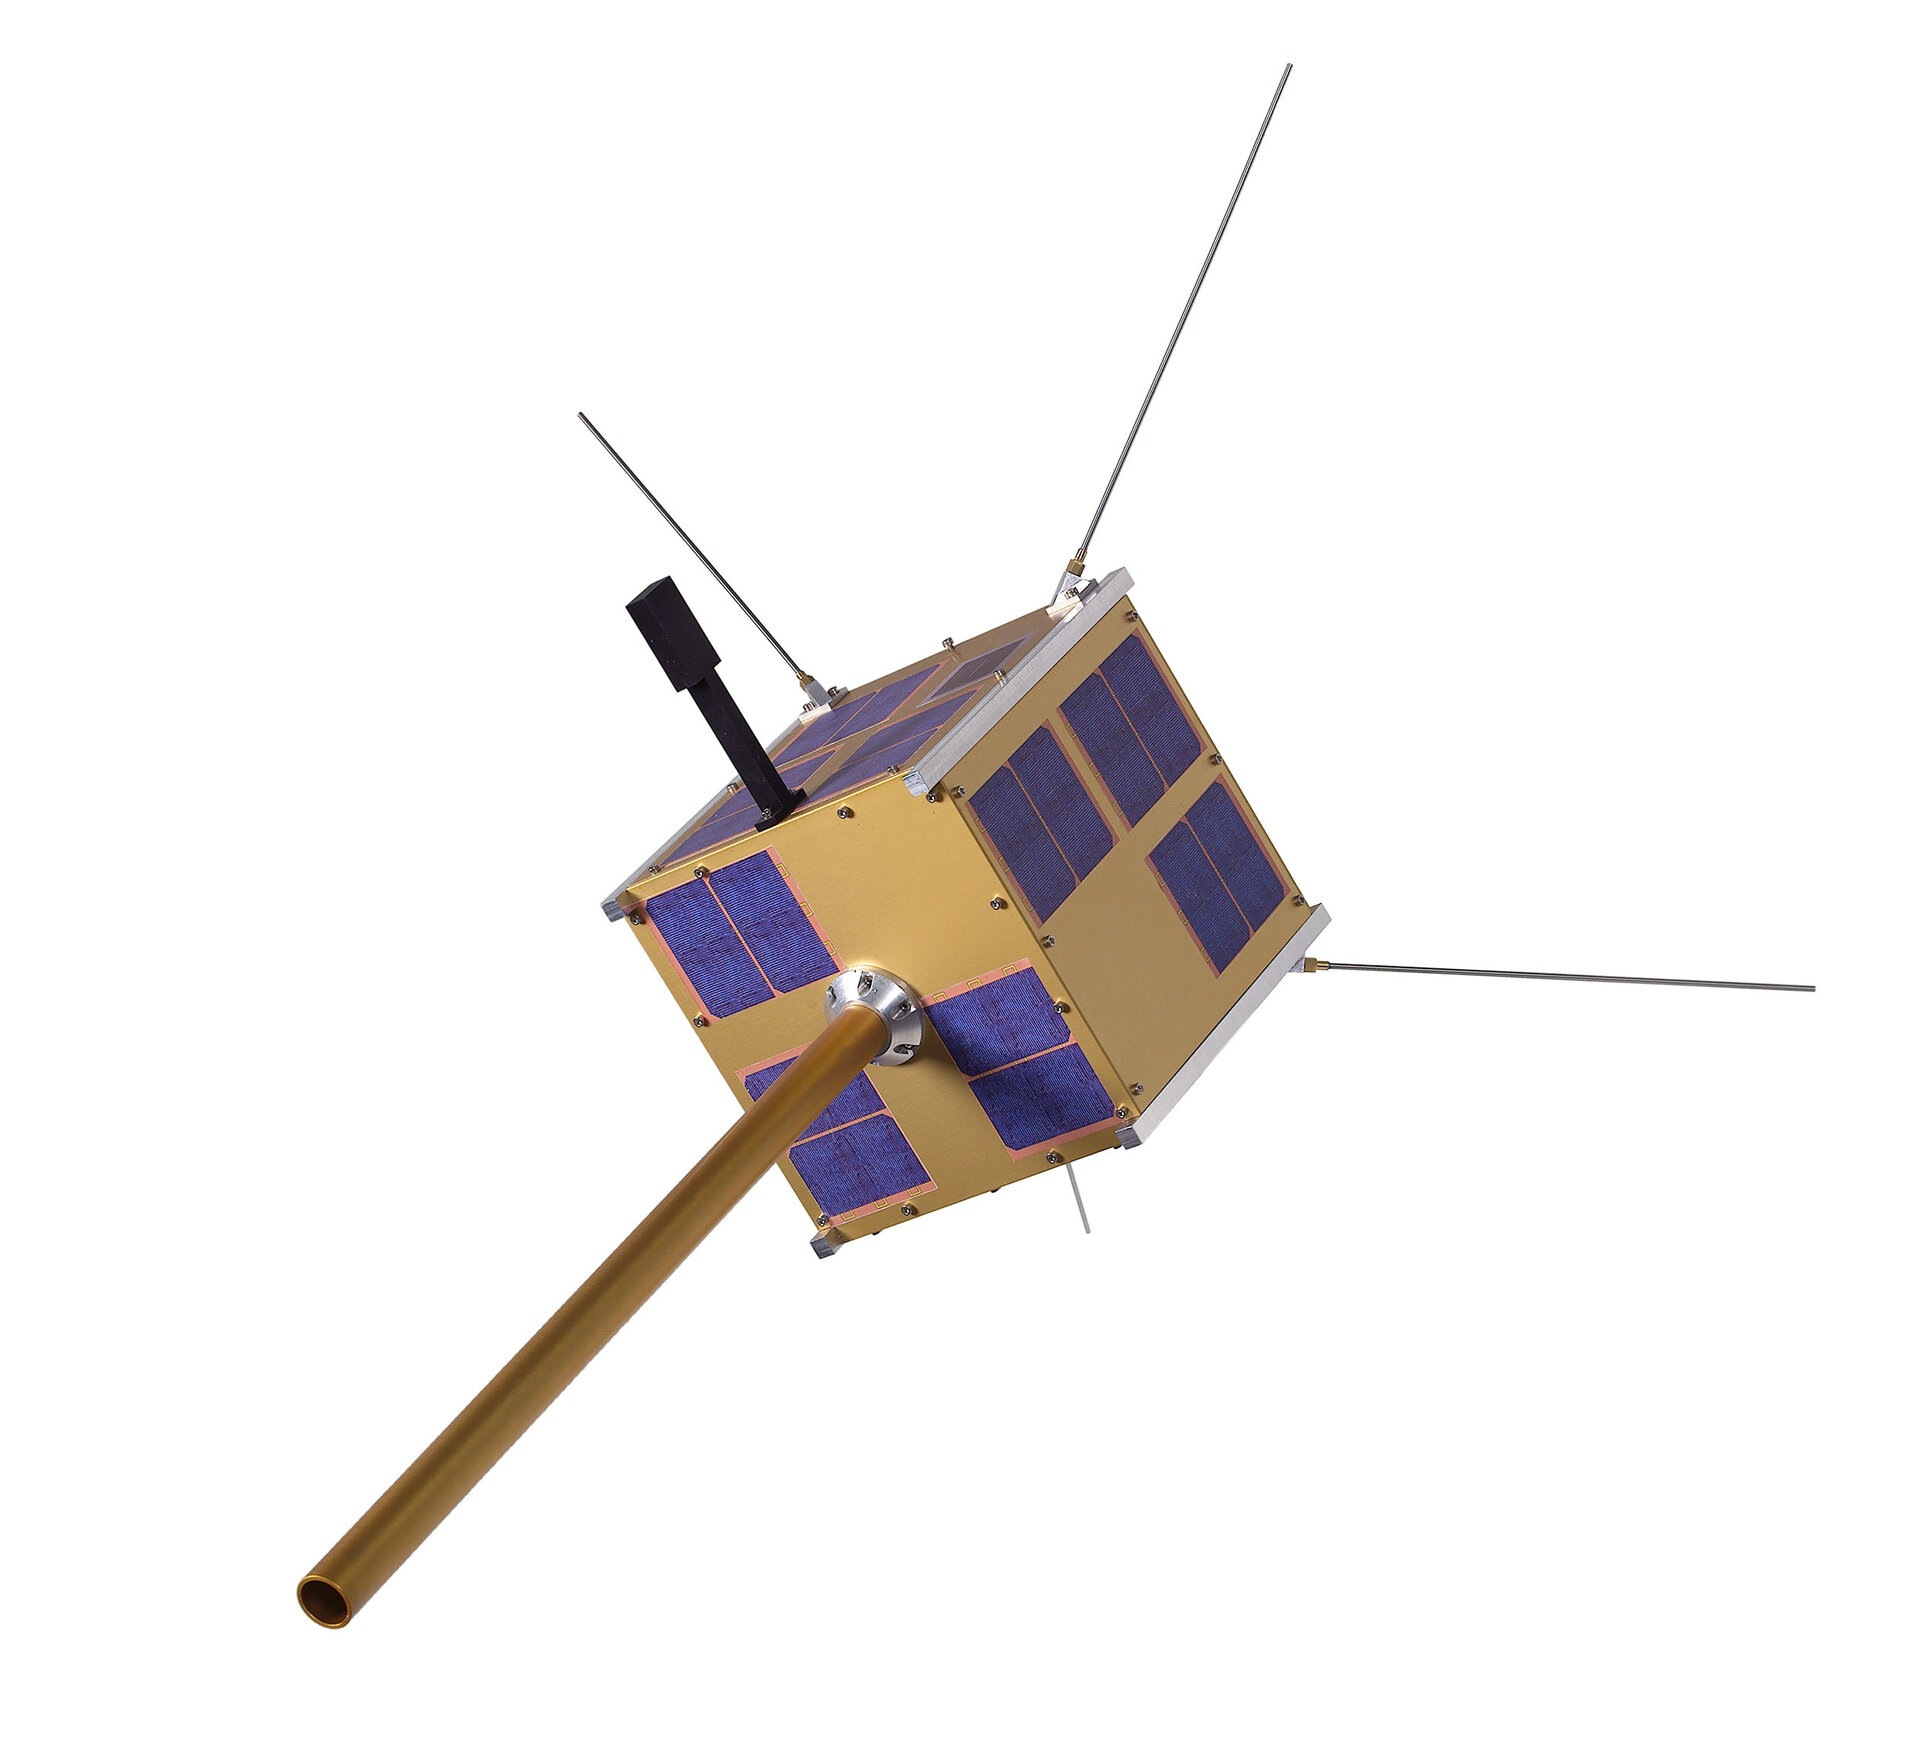 Norway's AIS satellite AISSat-1